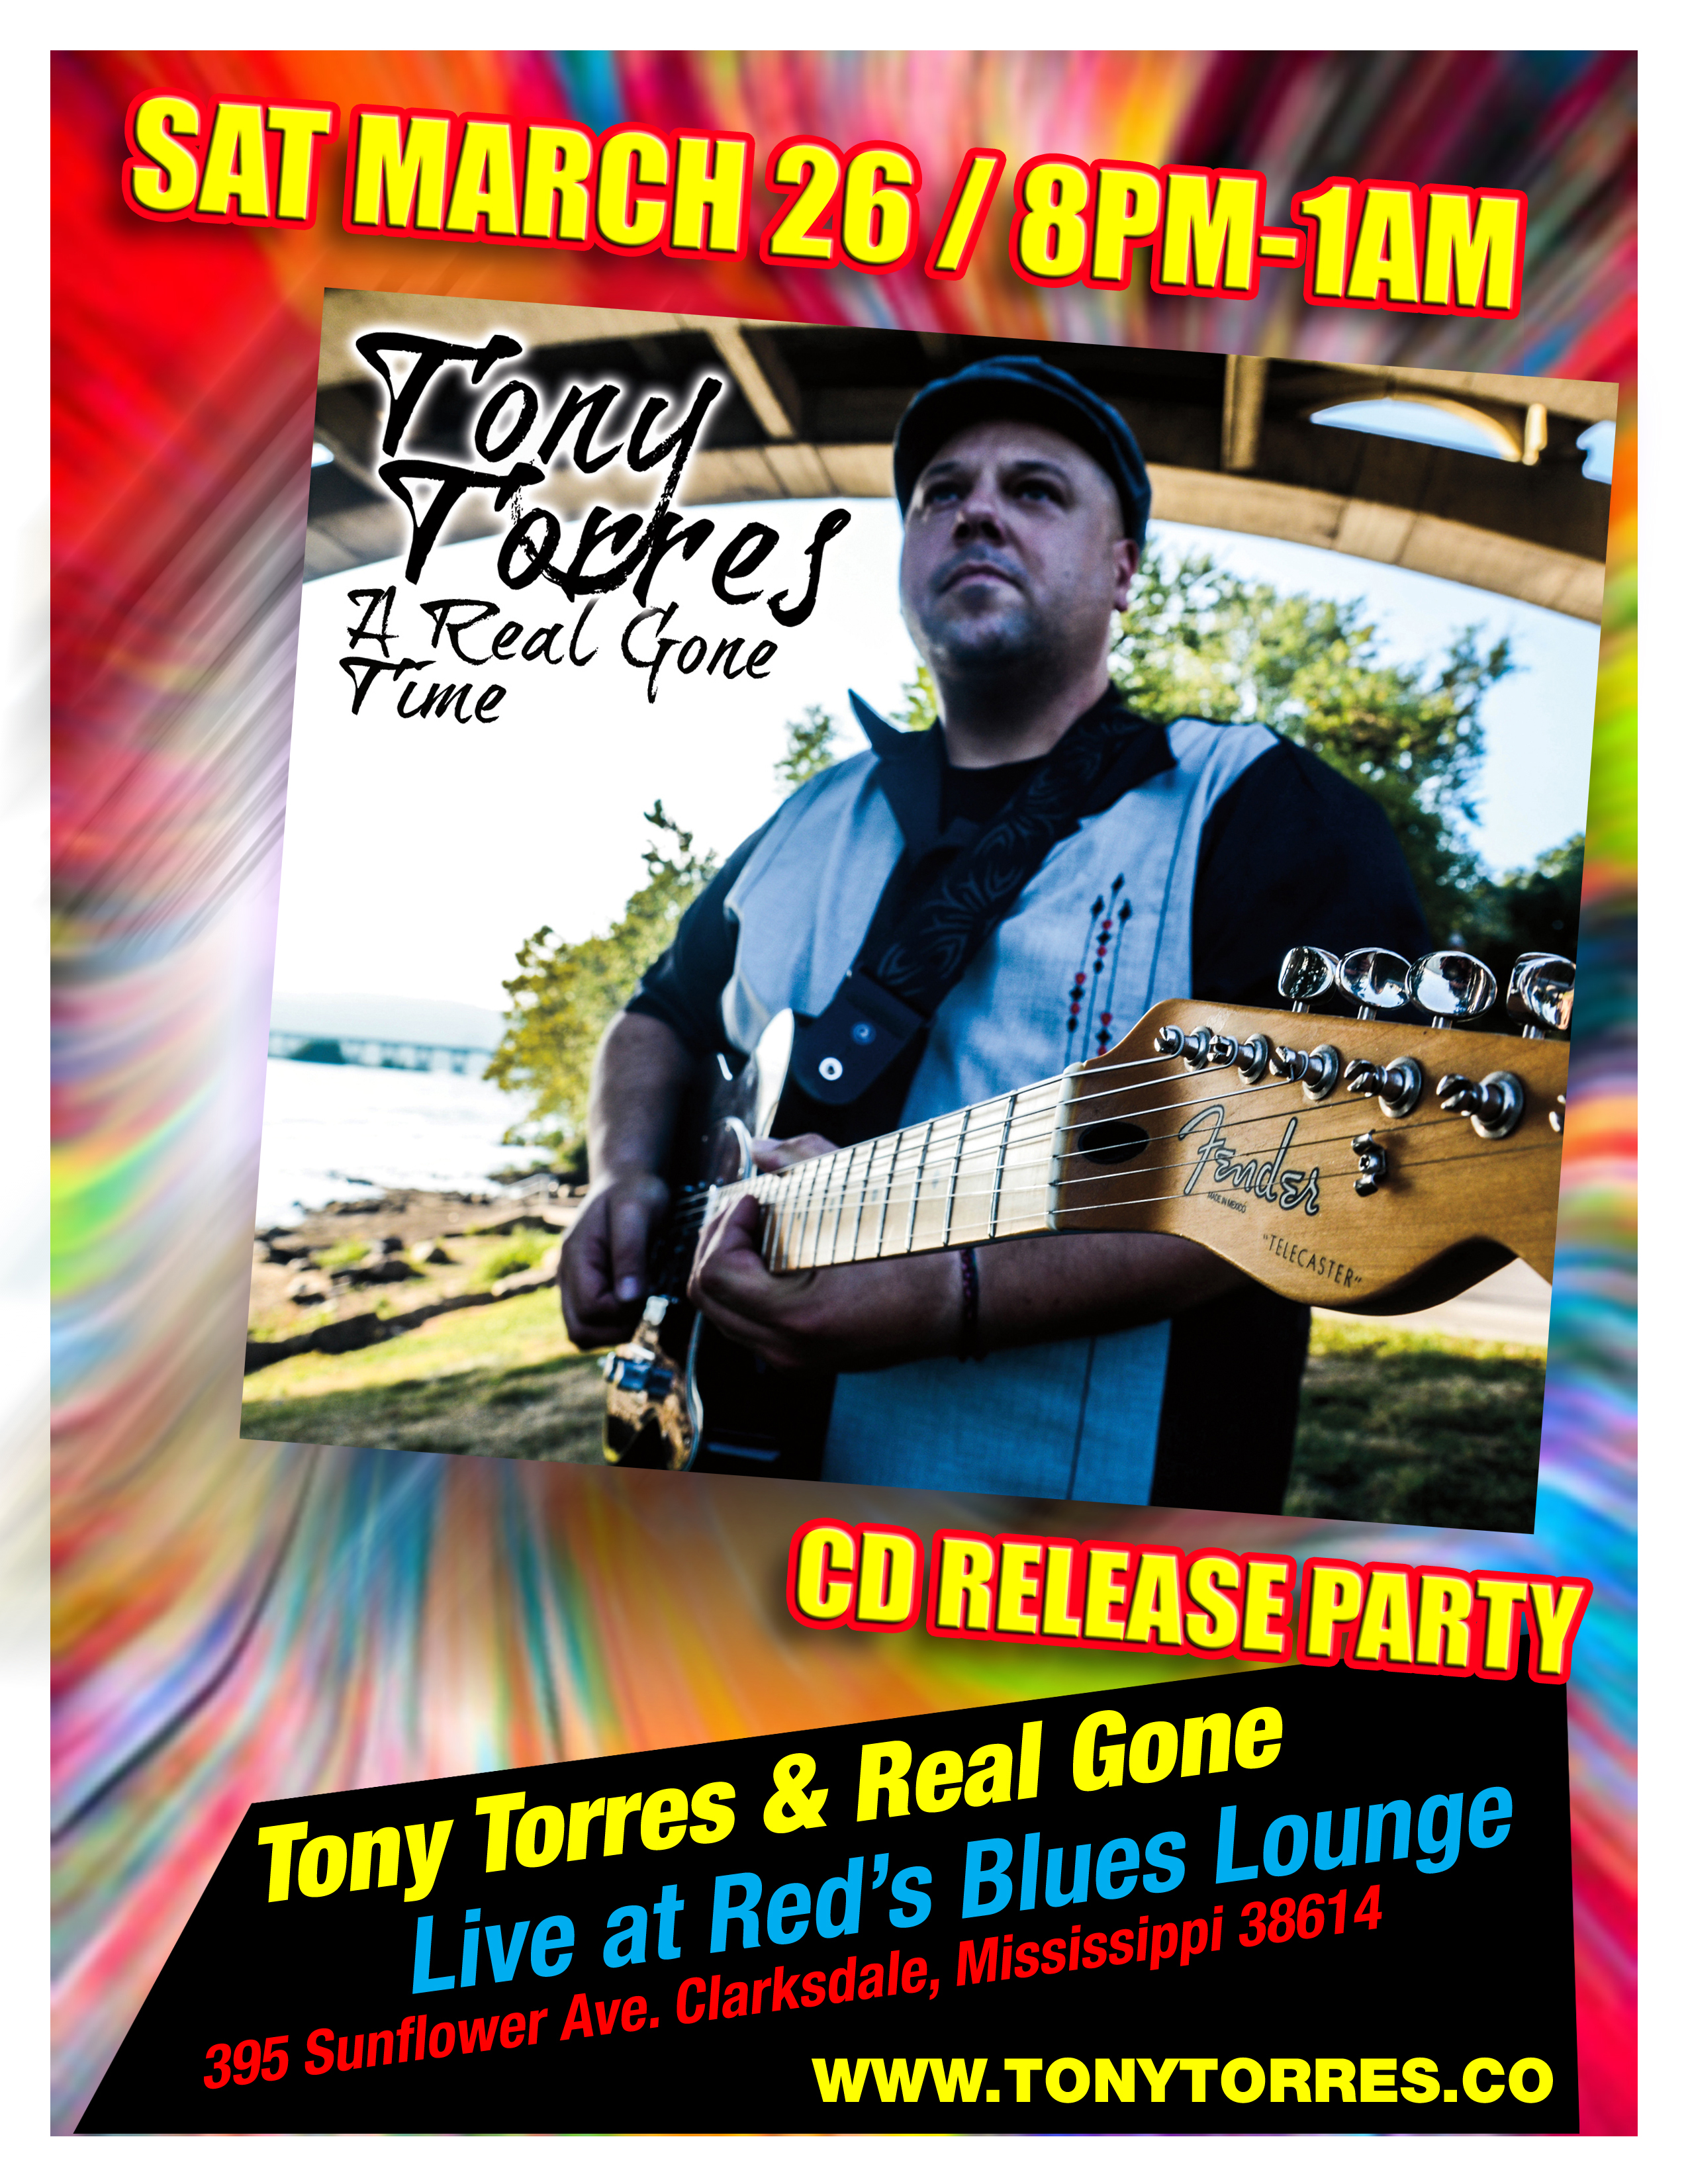 Tony Torres music schedule